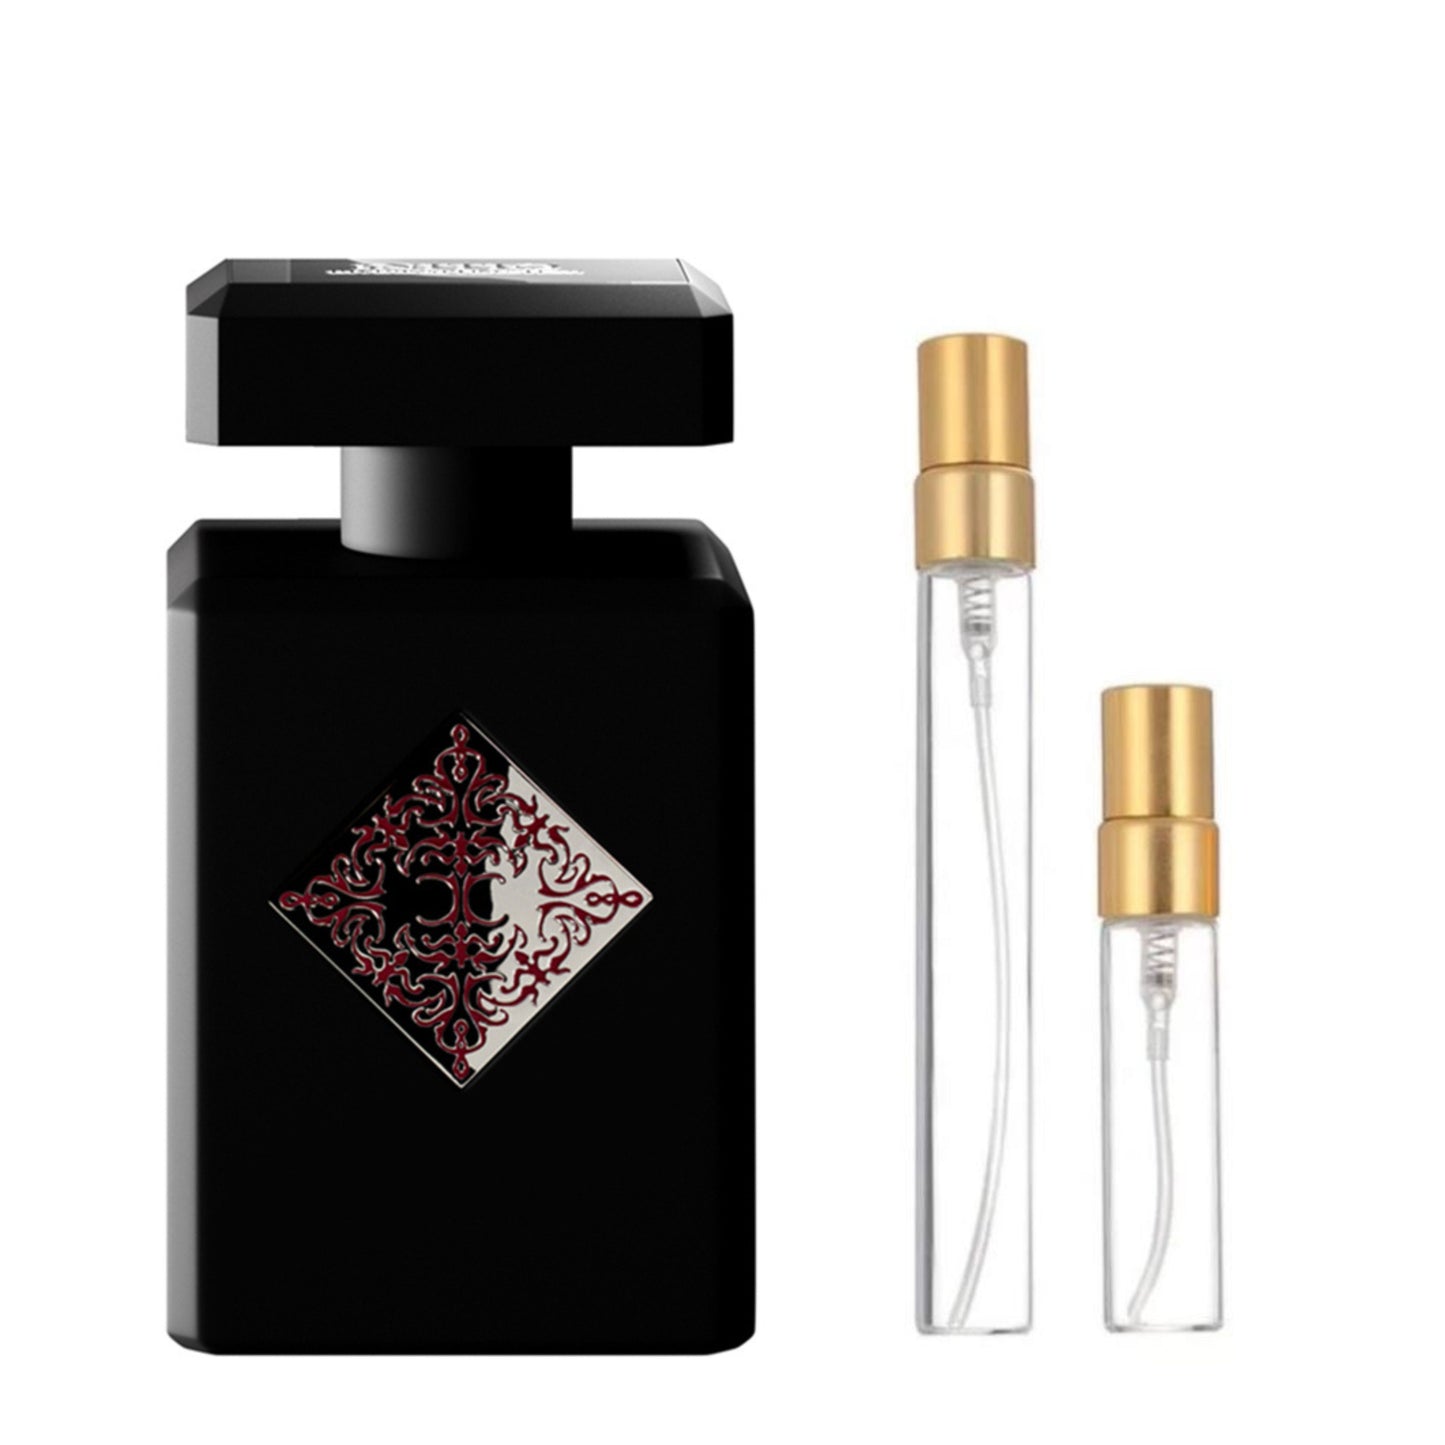 Initio Parfums Blessed Baraka